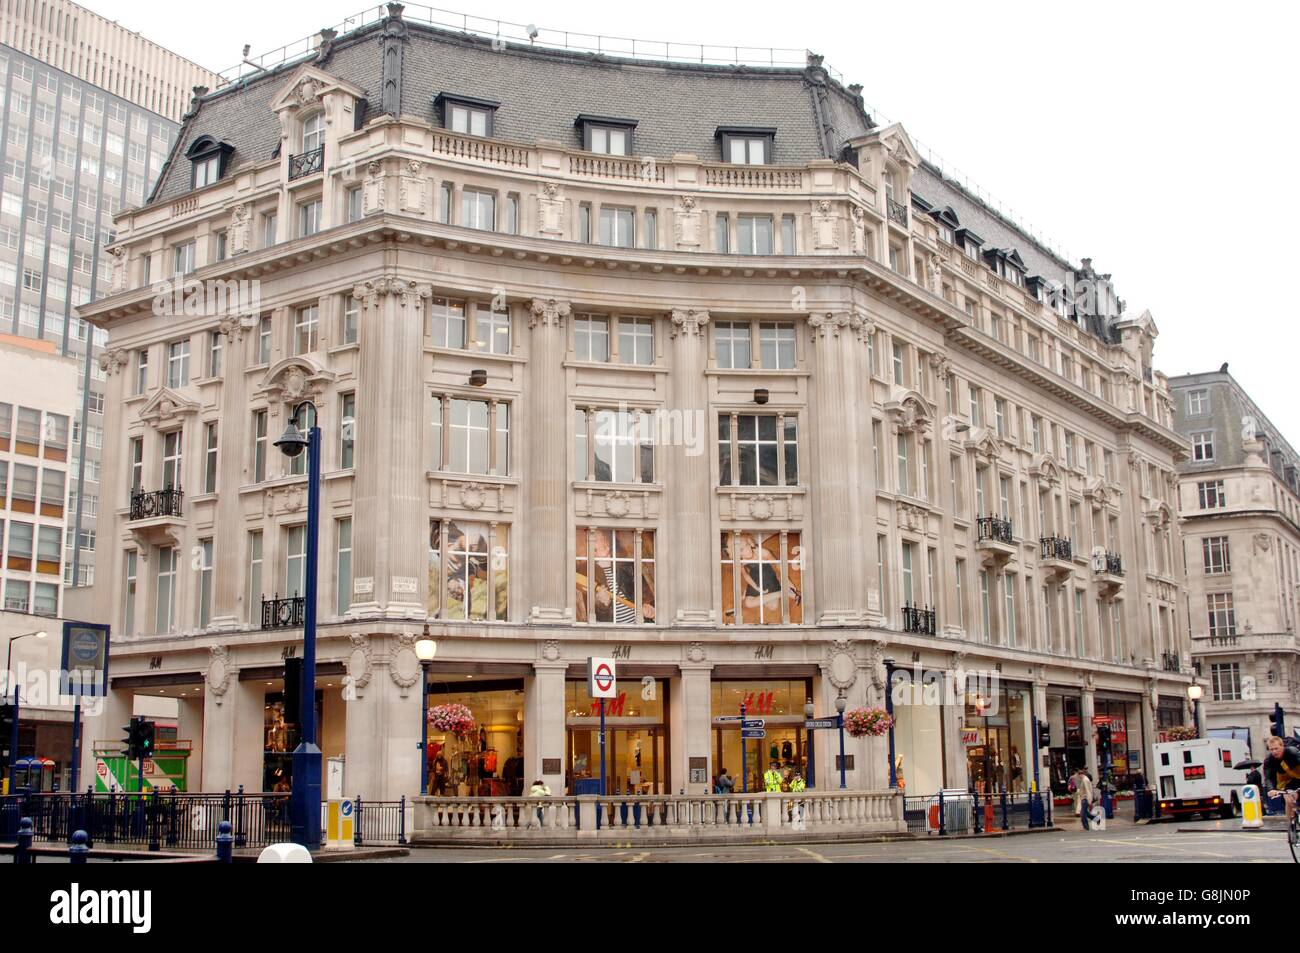 Calles y tiendas de Londres - H&M Fotografía de stock - Alamy